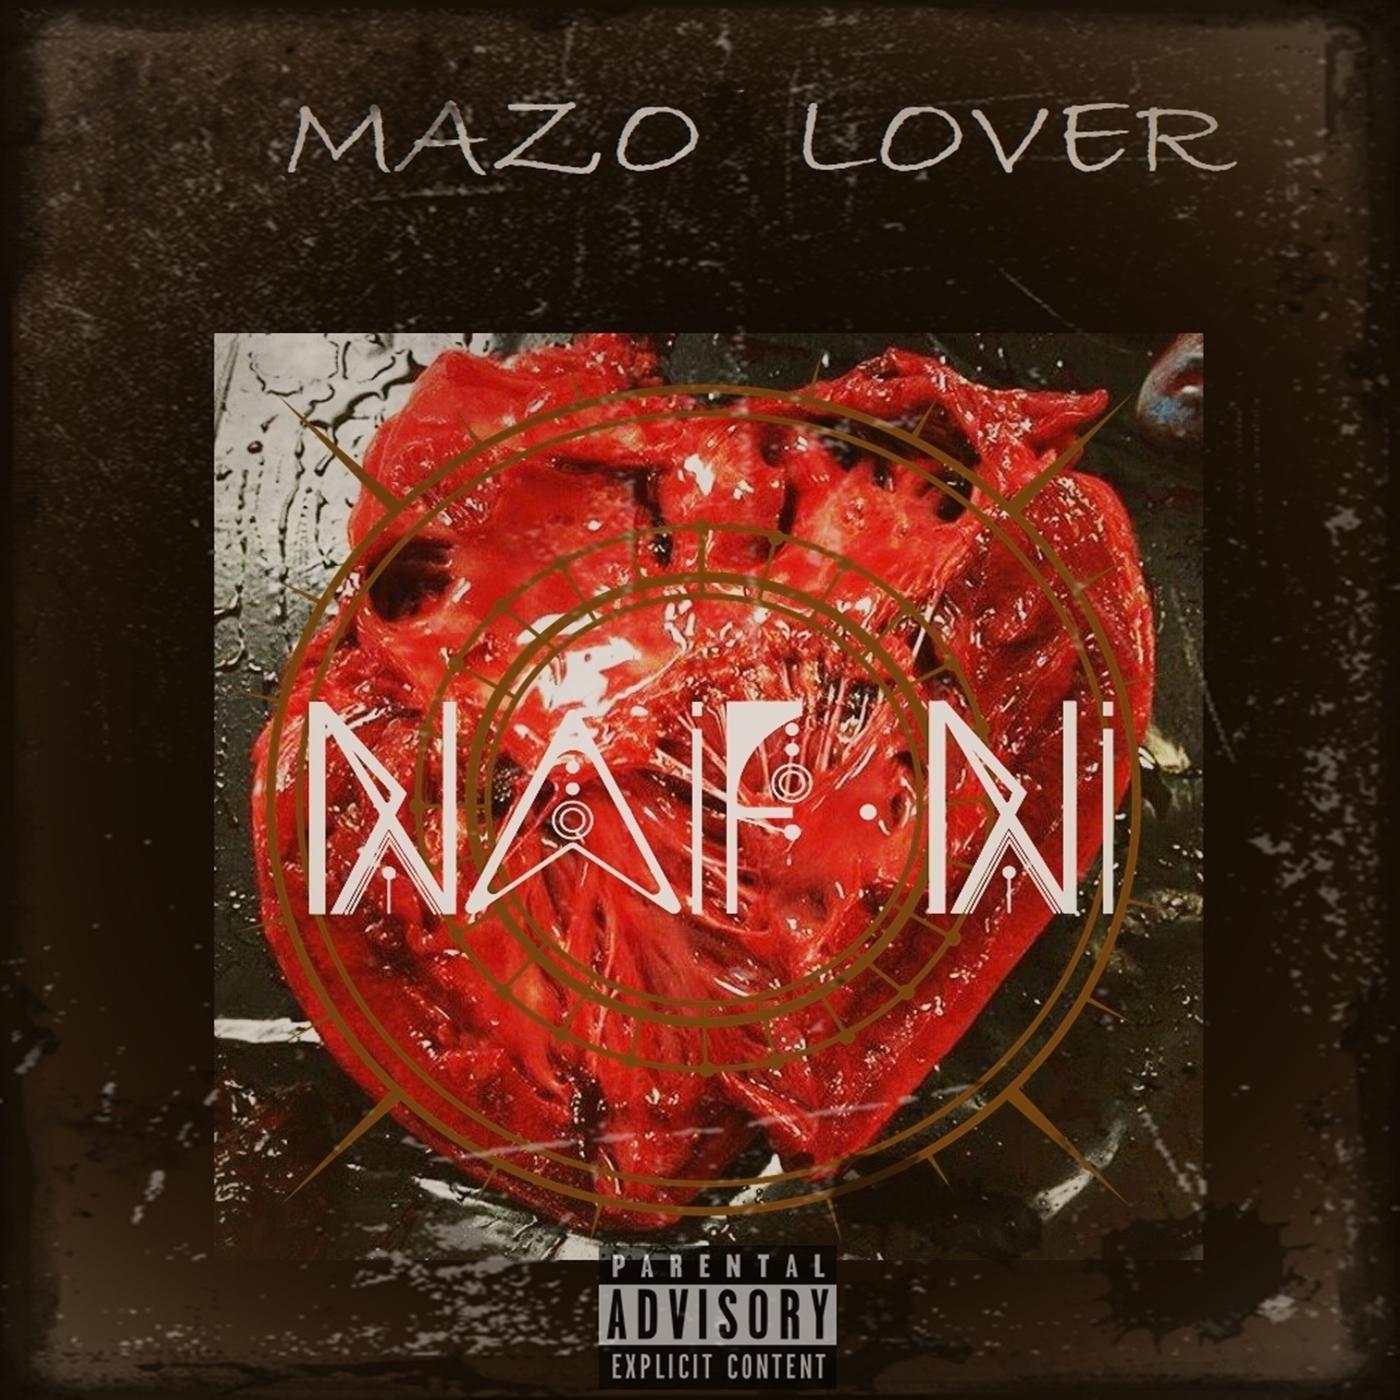 Mazo Lover